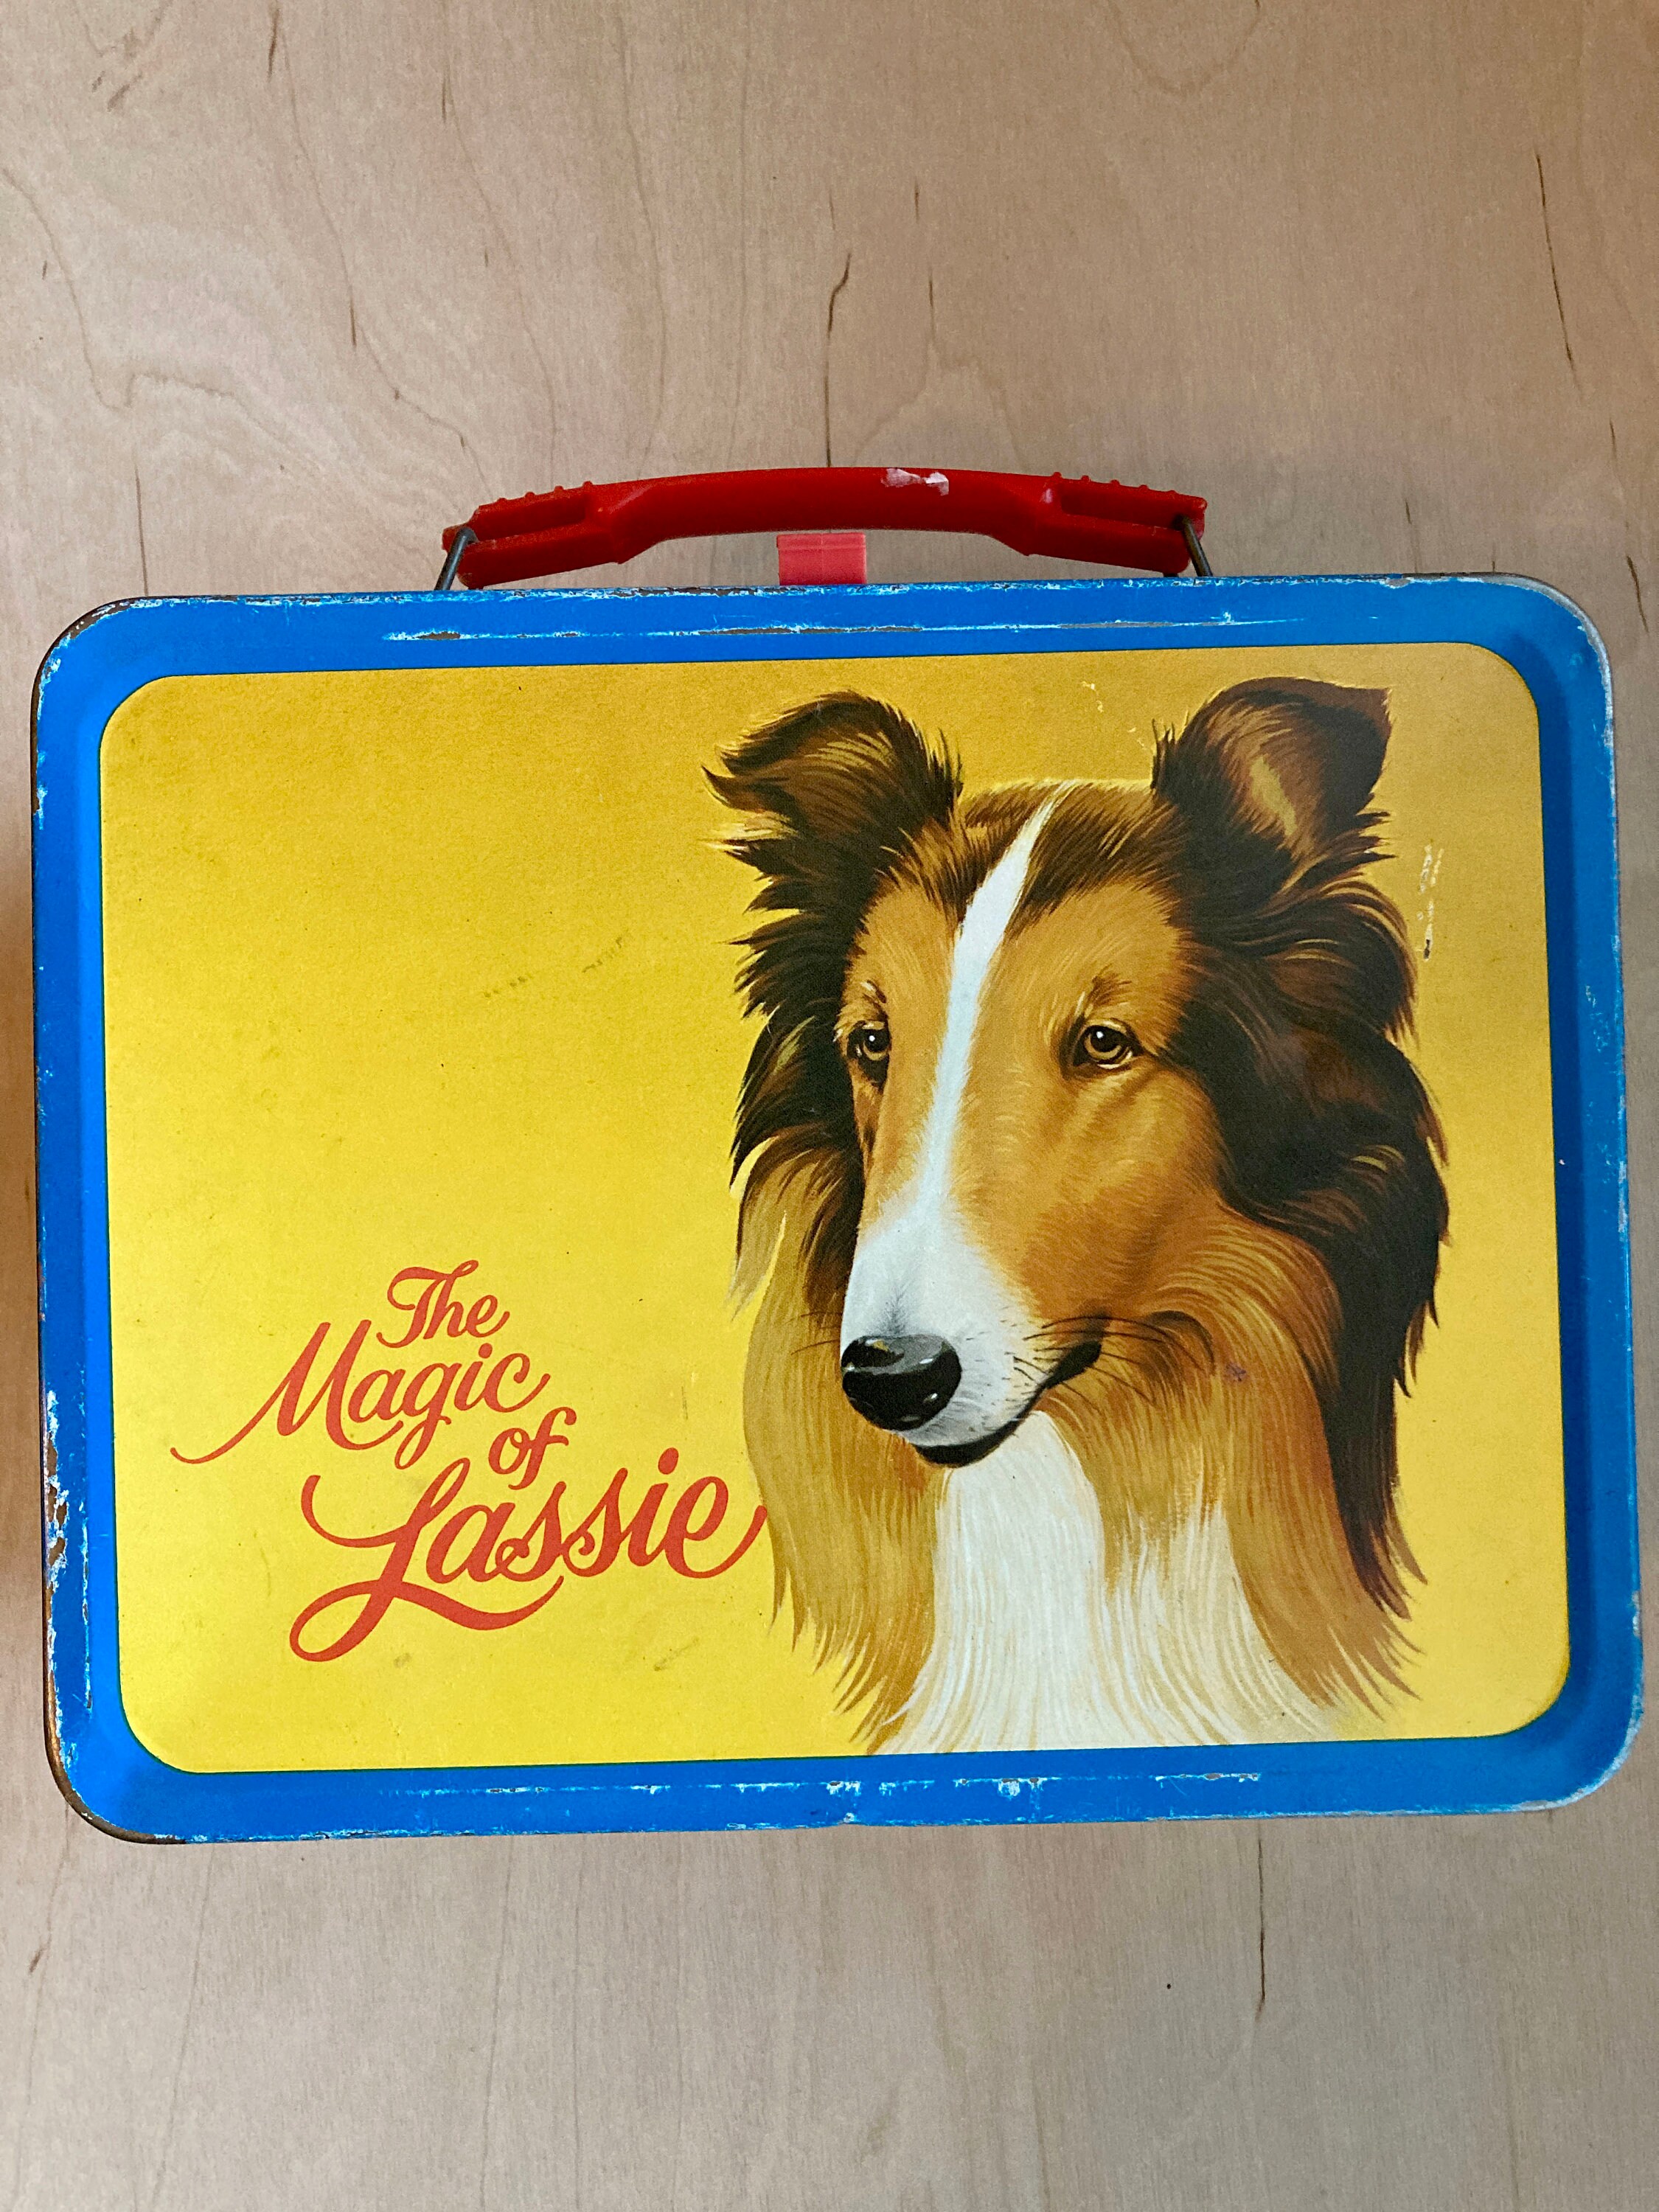 Magic of Lassie